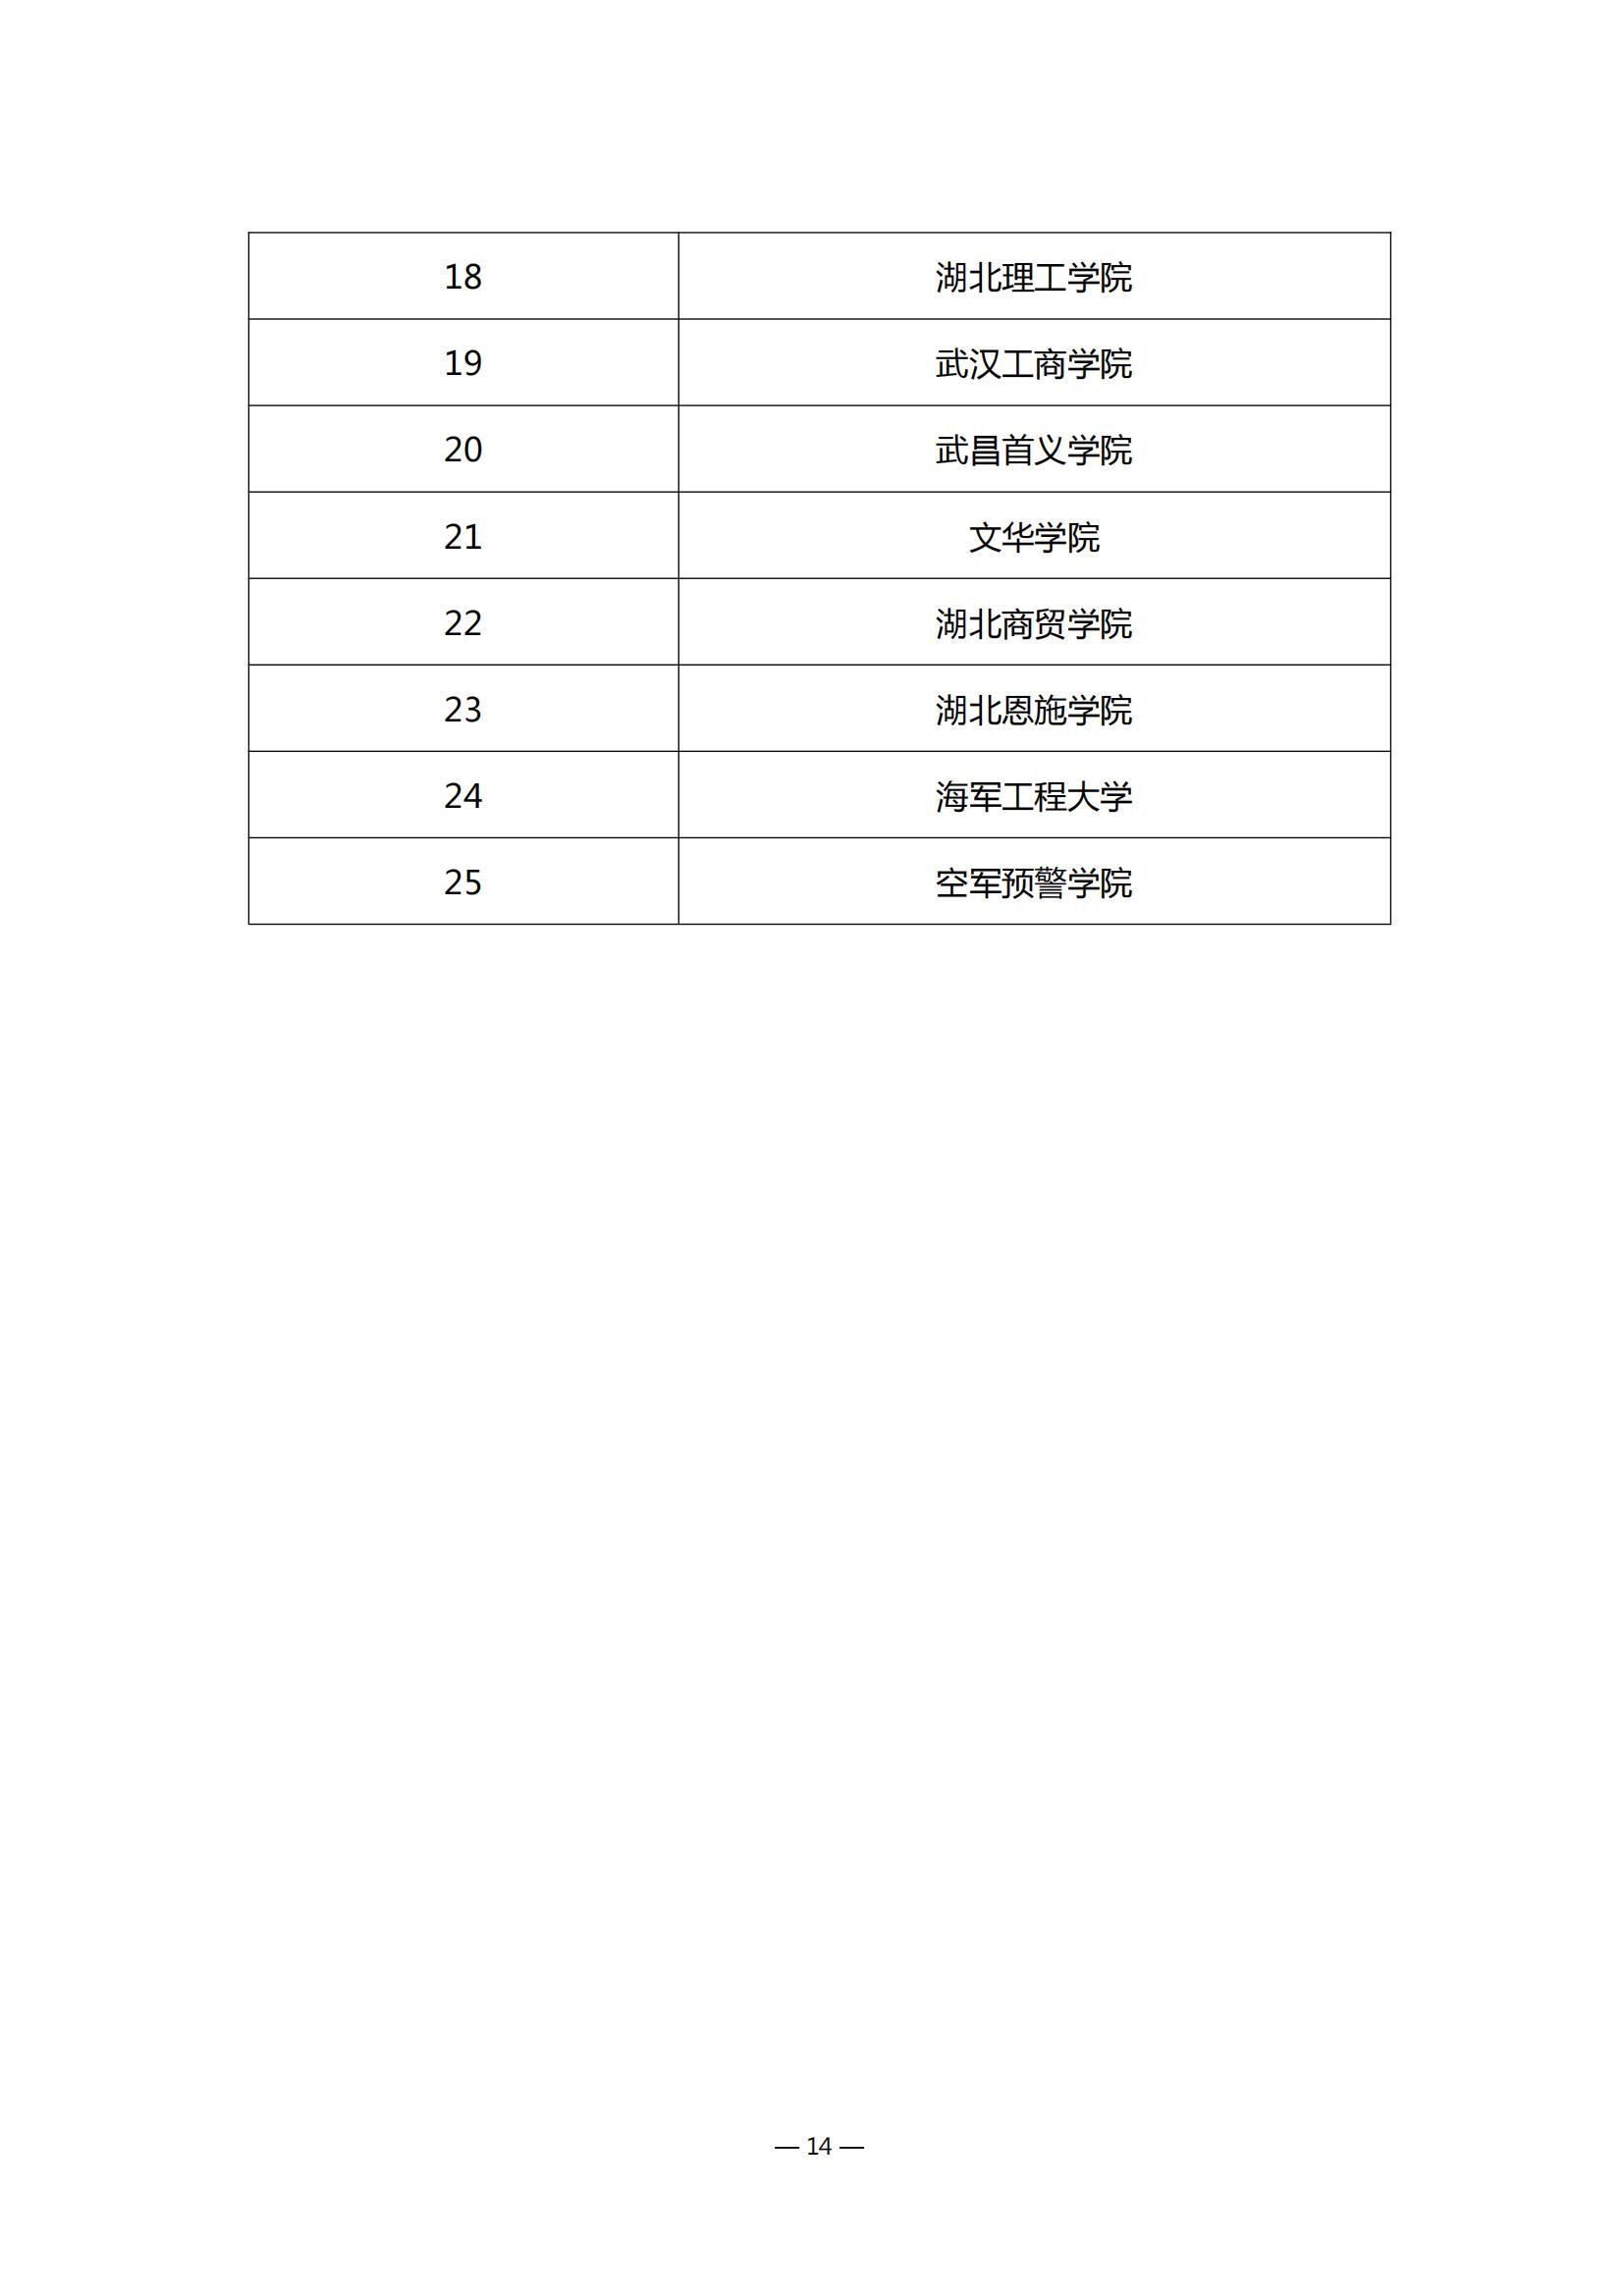 第四届湖北省高校教师教学创新大赛评审结果公示_13.jpg